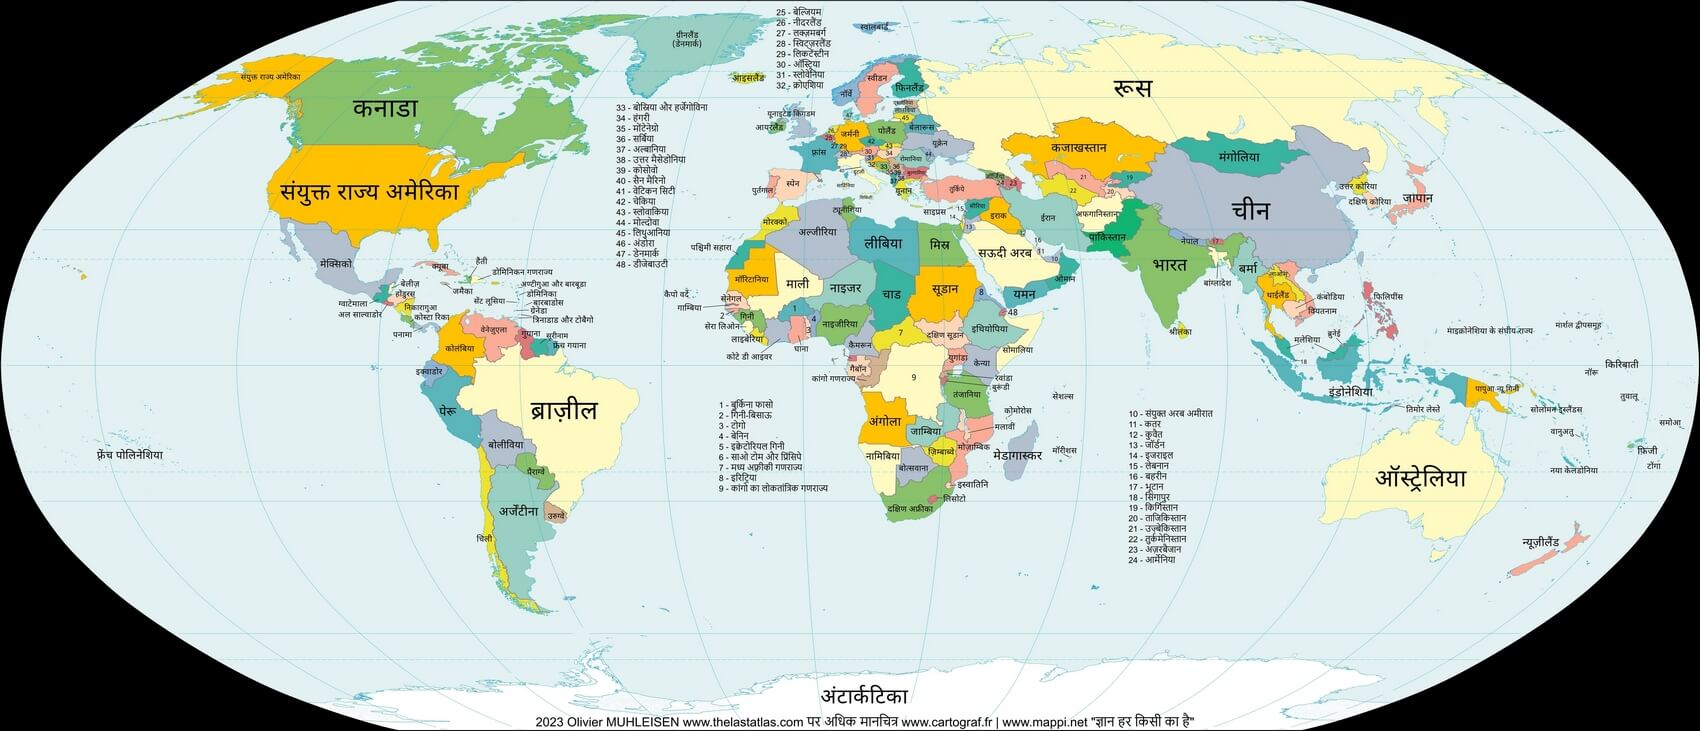 Mapa del mundo con países